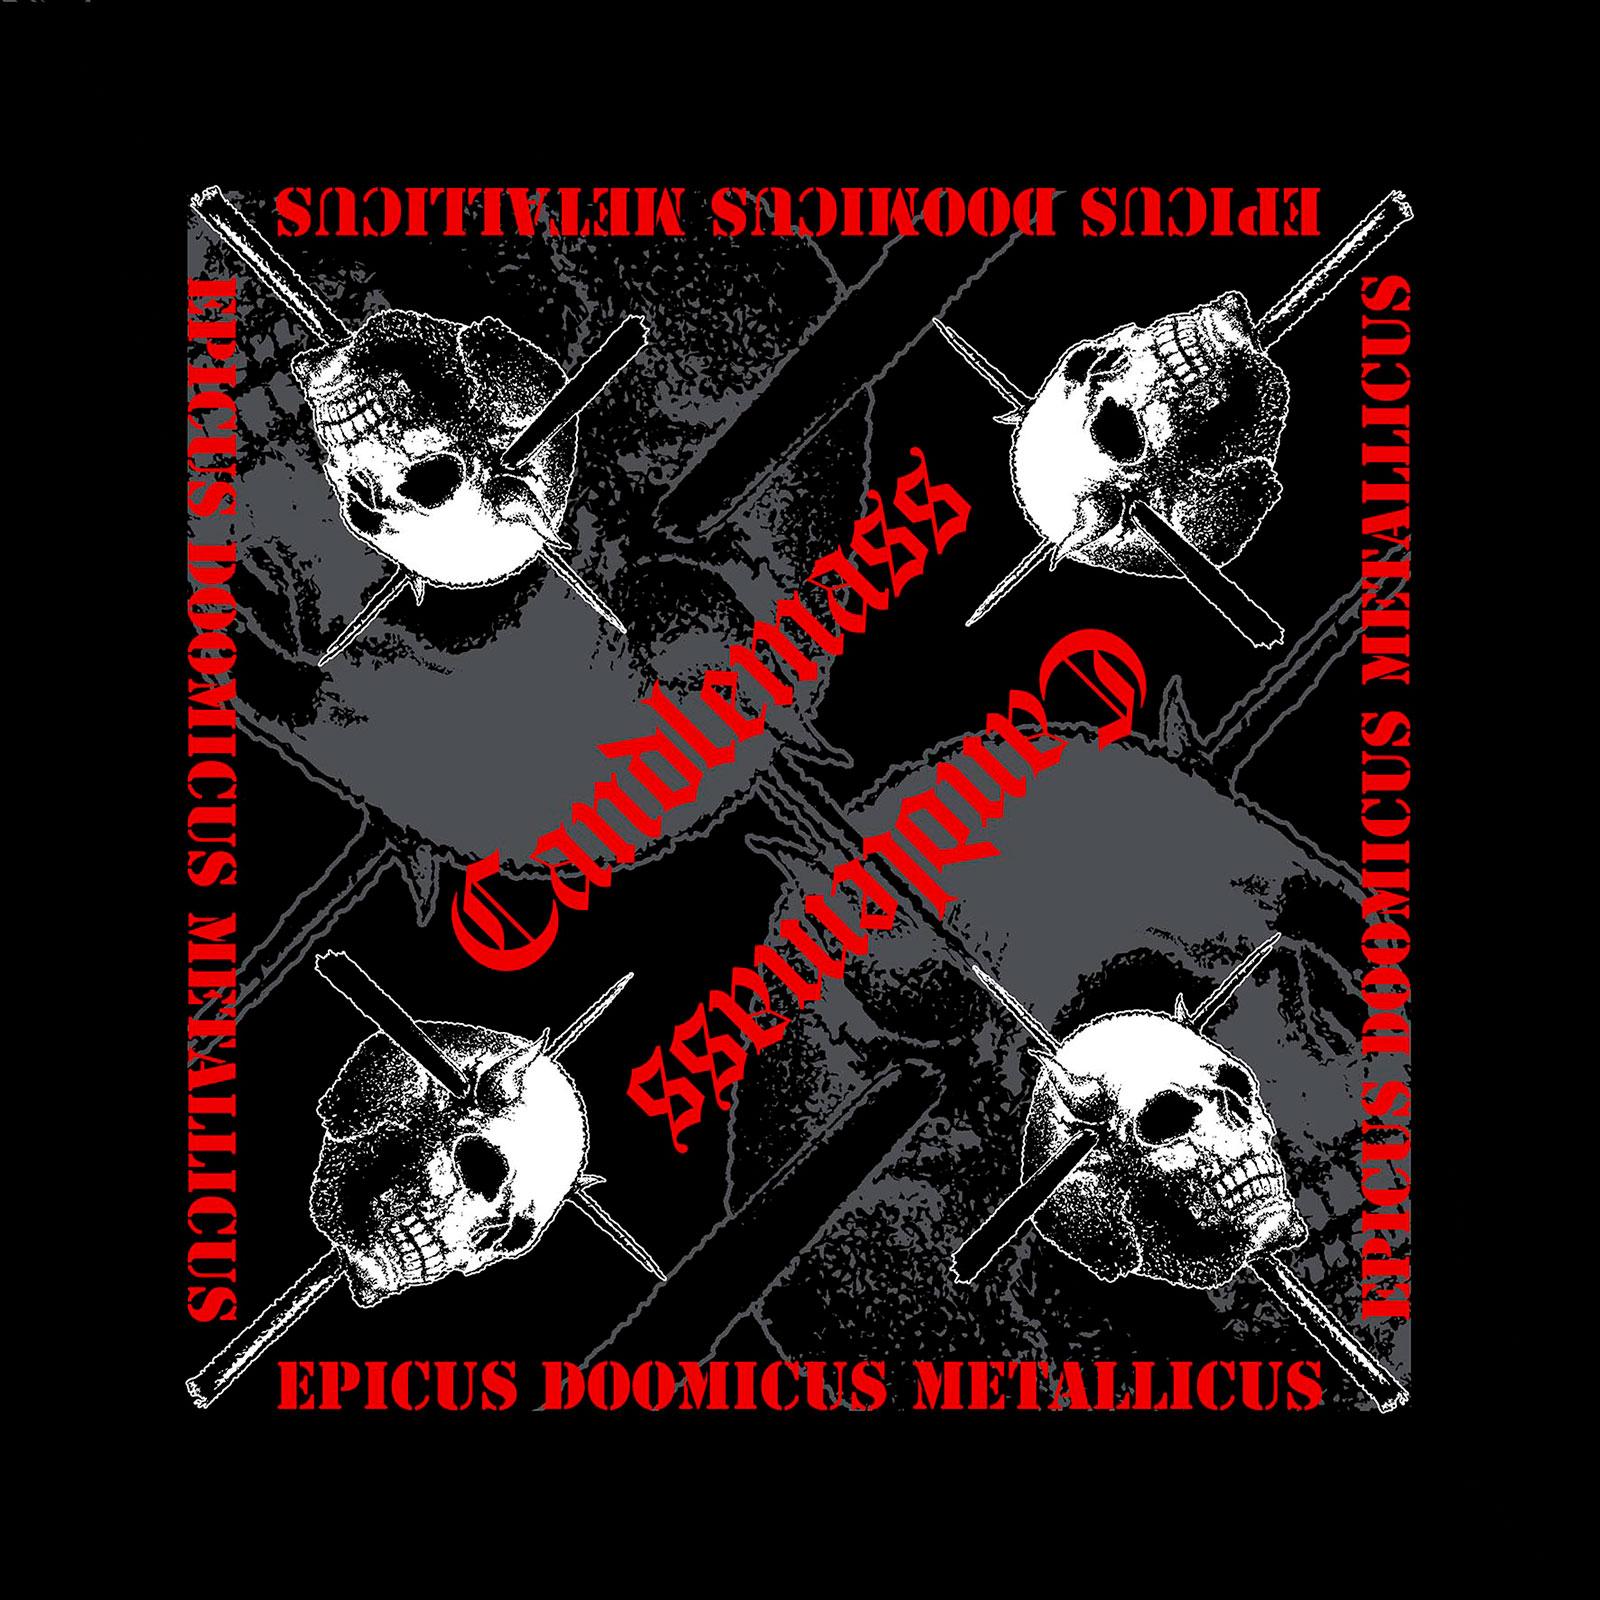 (キャンドルマス) Candlemass オフィシャル商品 ユニセックス Epicus Doomicus Metallicus バンダナ スカーフ ハンカチ 【海外通販】